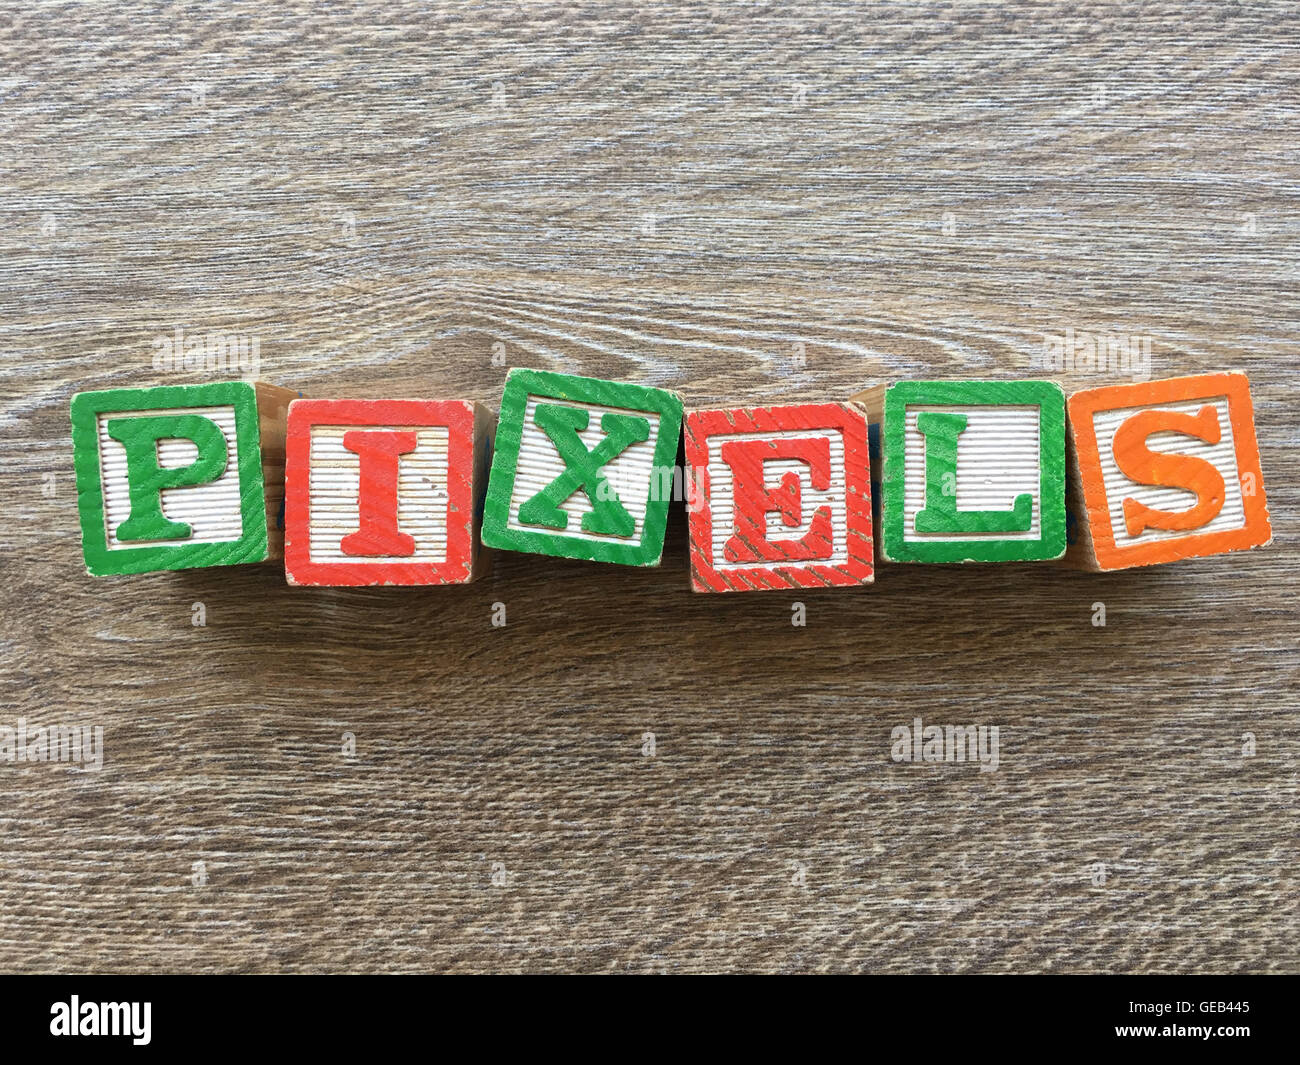 Holzblöcke oder hölzerne Würfel Spielzeug mit Alphabet Buchstaben darauf kombiniert zusammen, um das Wort Pixel erstellen Stockfoto